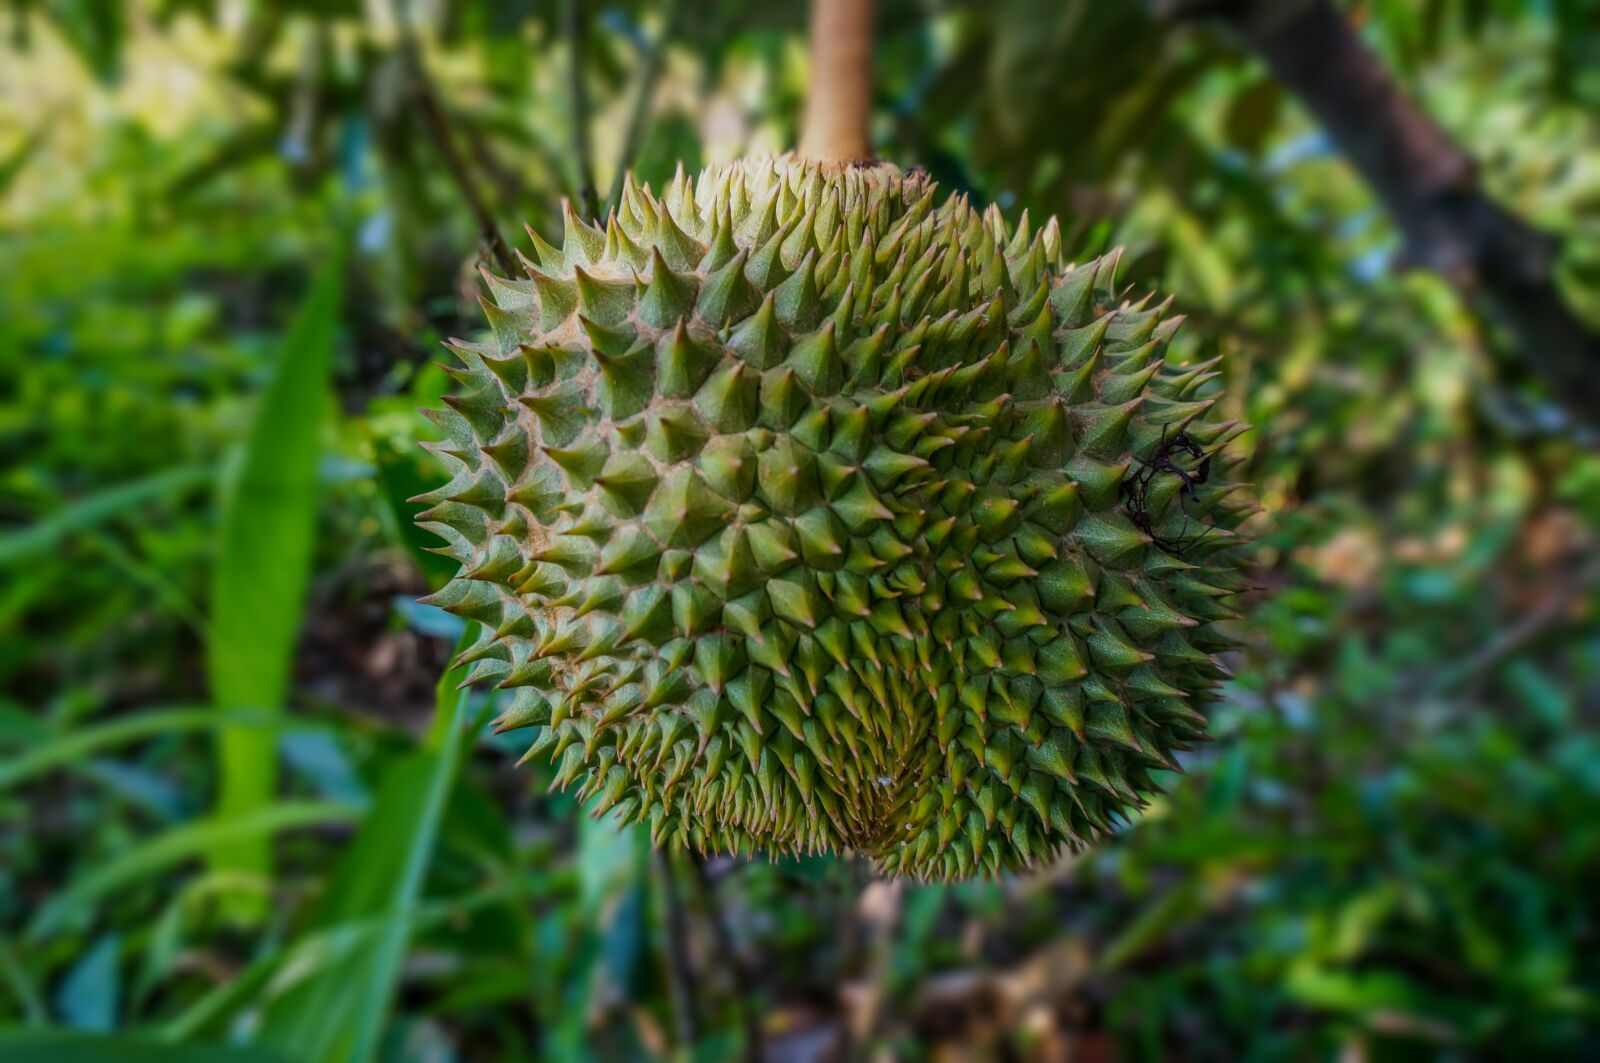 Sony Alpha NEX-3N sample photo. Fruit, durian, tropical photography